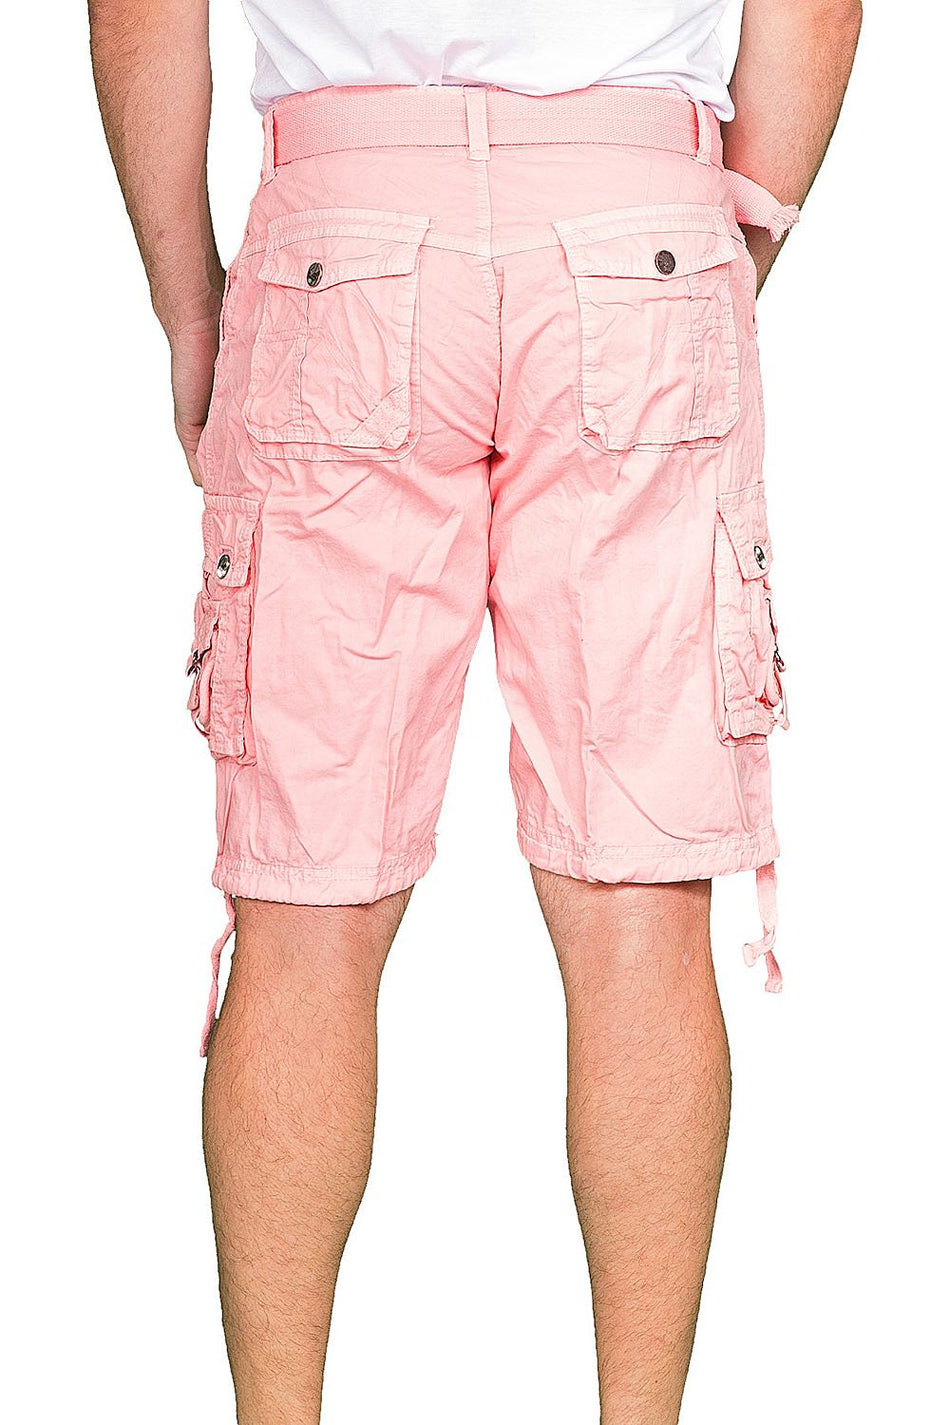 153100 - Peach Cargo Shorts